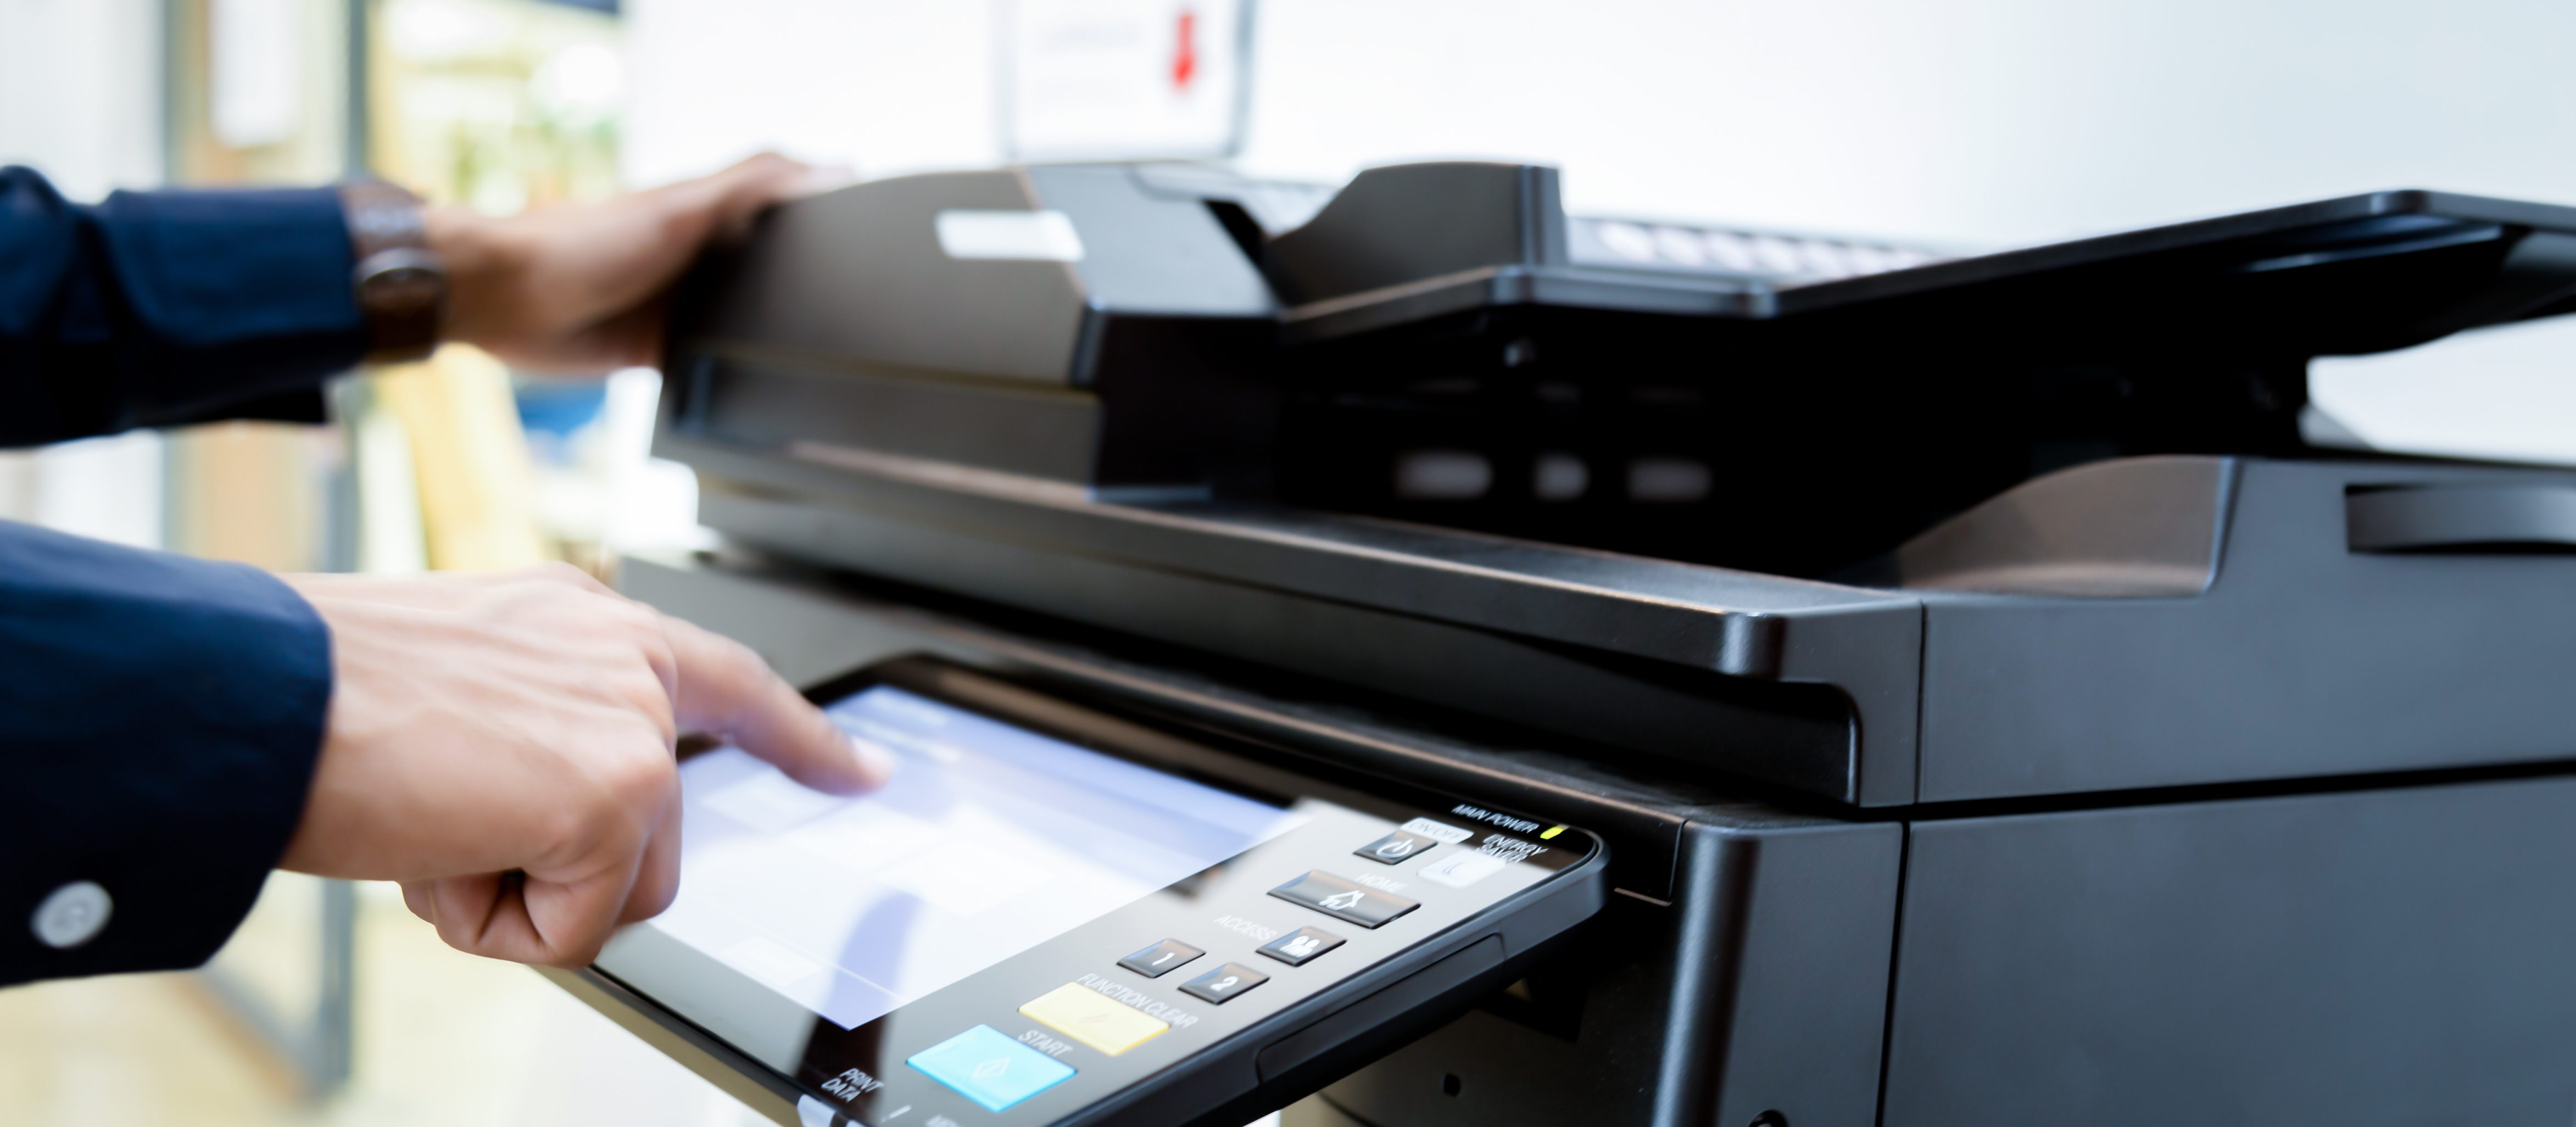 Understanding Your Printing Costs